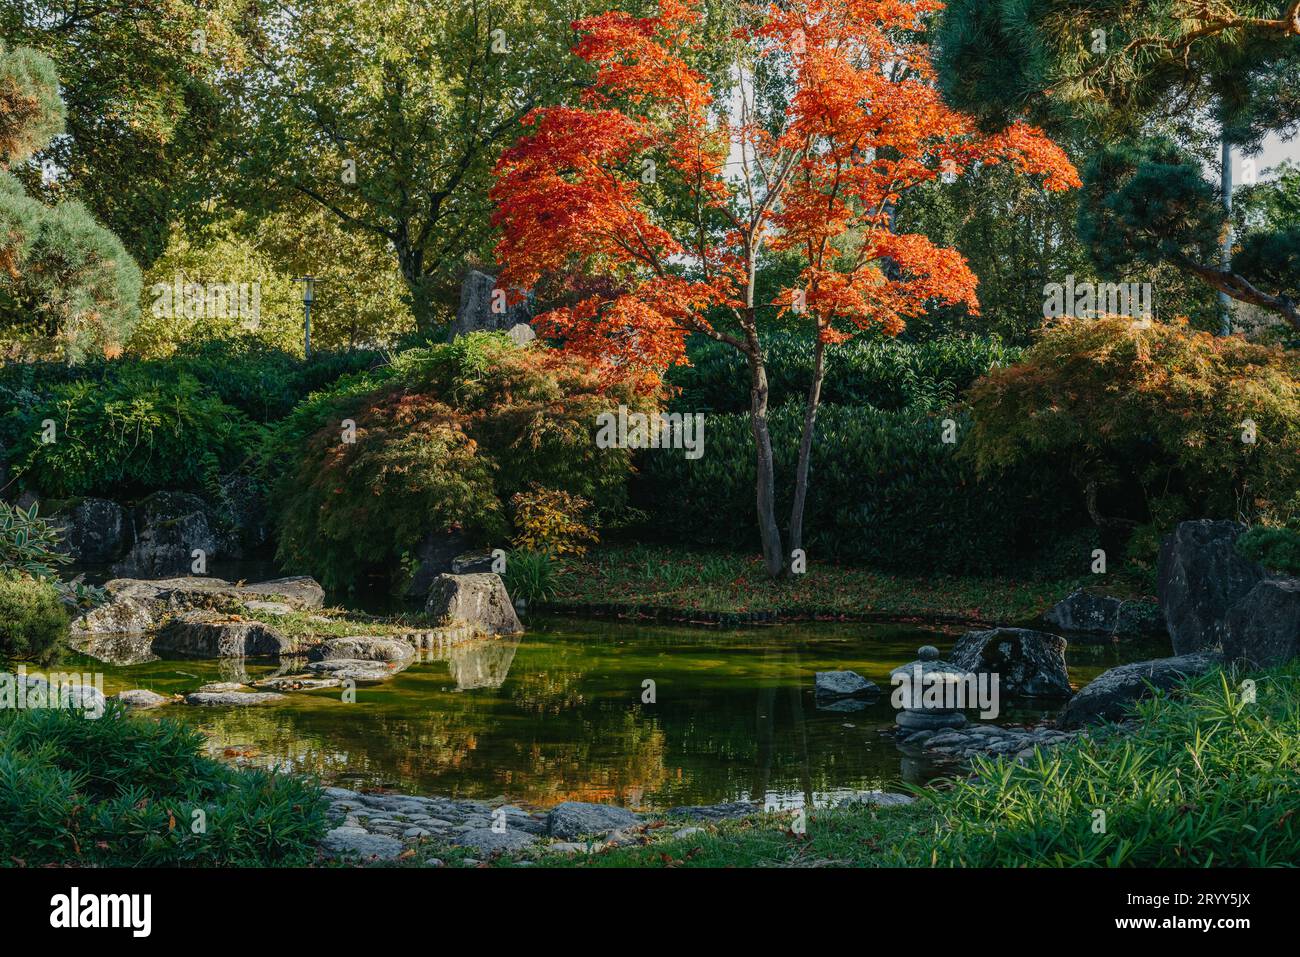 Bella e tranquilla scena nel giardino giapponese primaverile. Immagine autunnale del Giappone. Bellissimo giardino giapponese con stagno e foglie rosse. Stagno i Foto Stock